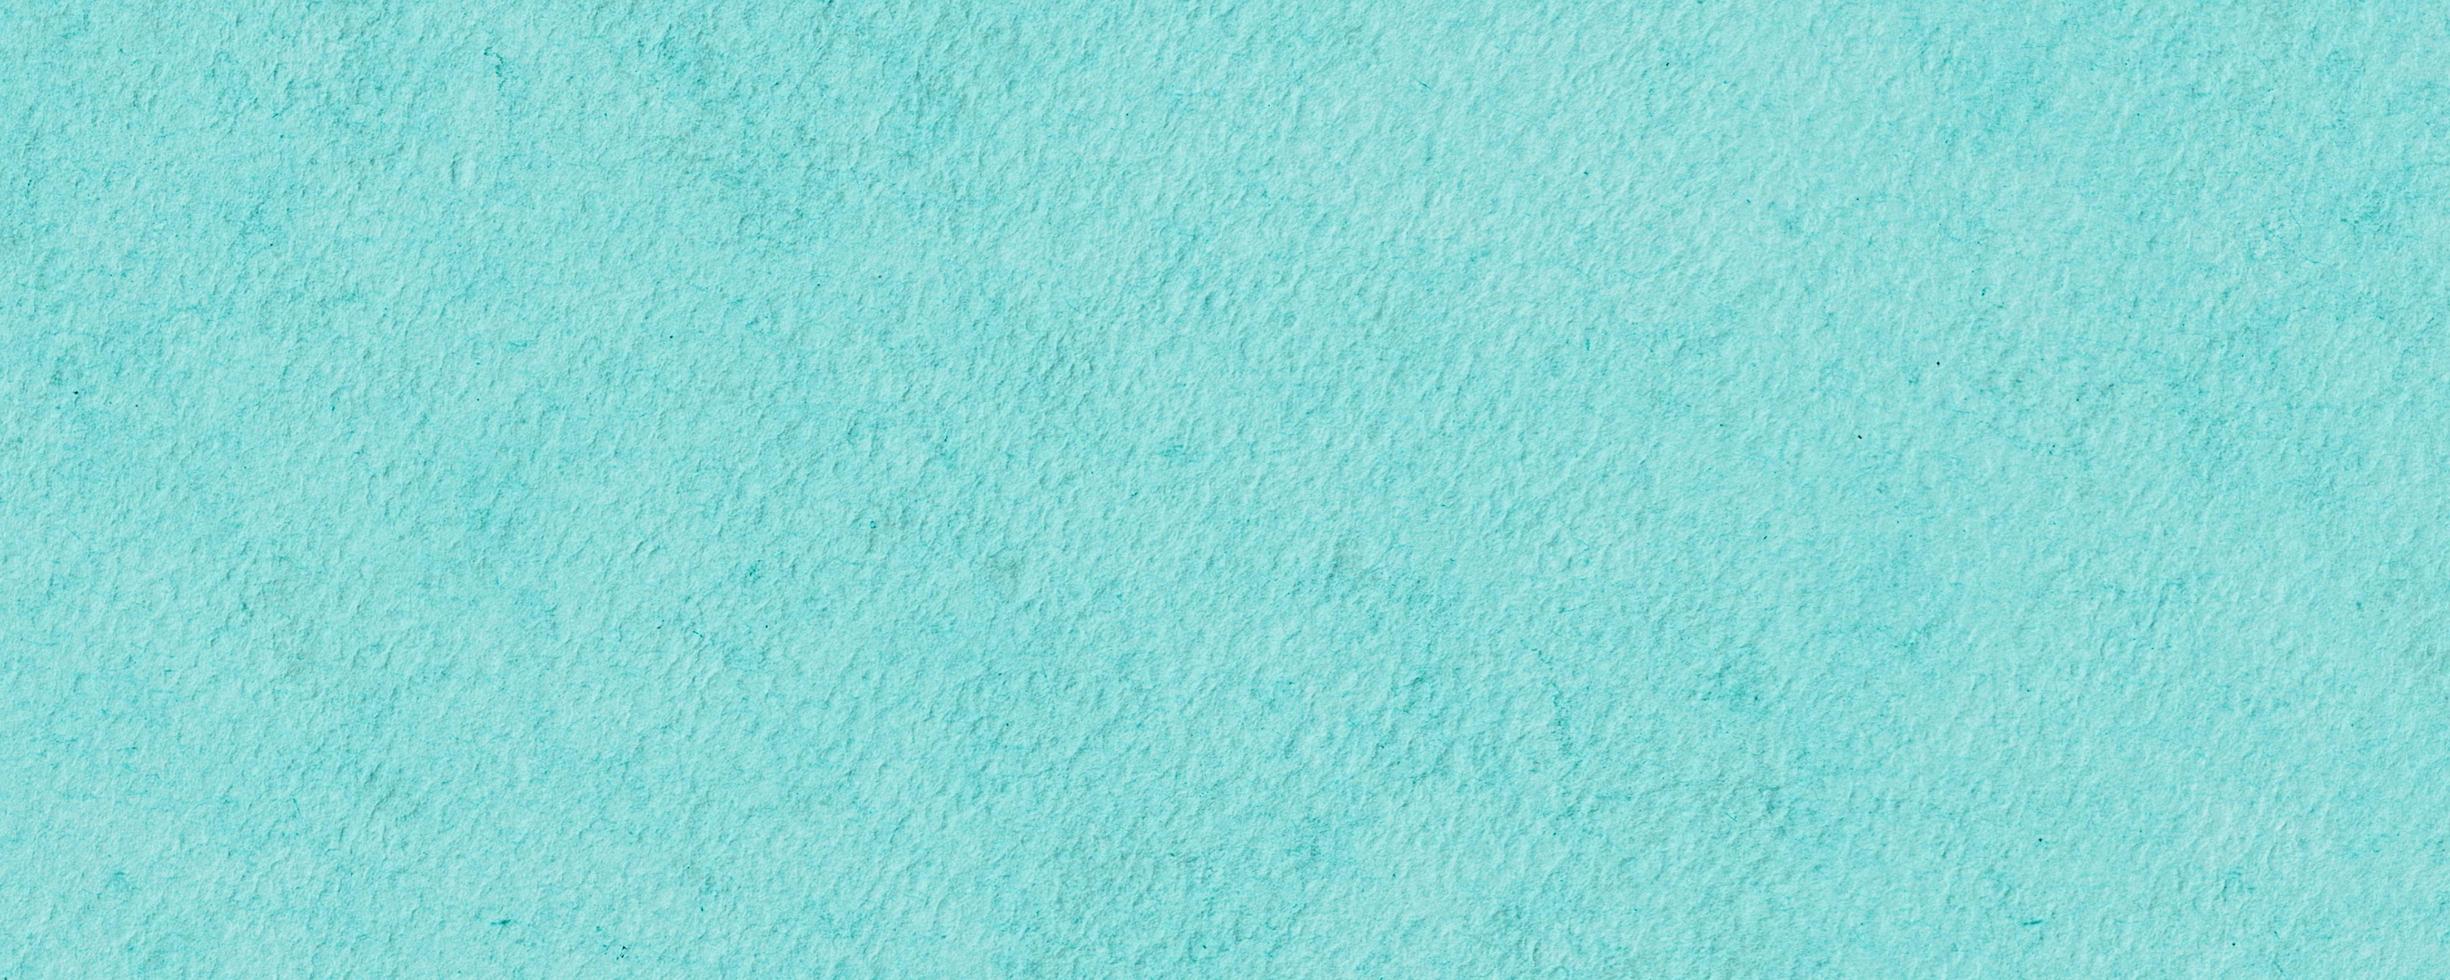 fond de rectangle de texture abstraite aquarelle turquoise photo